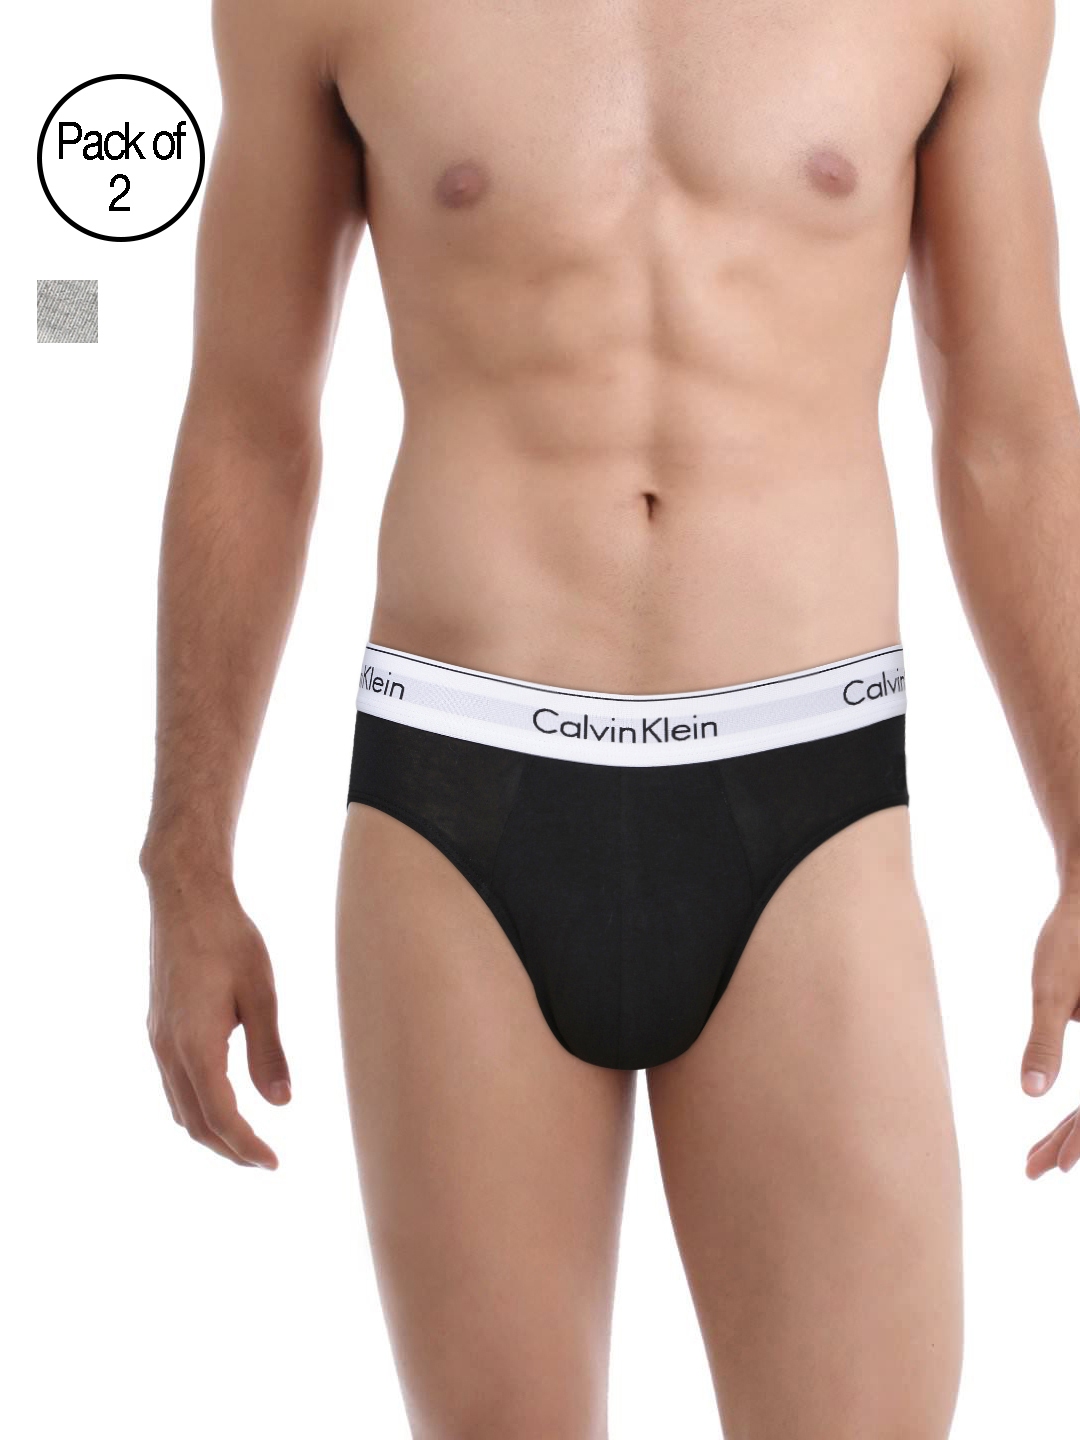 calvin klein air fx underwear